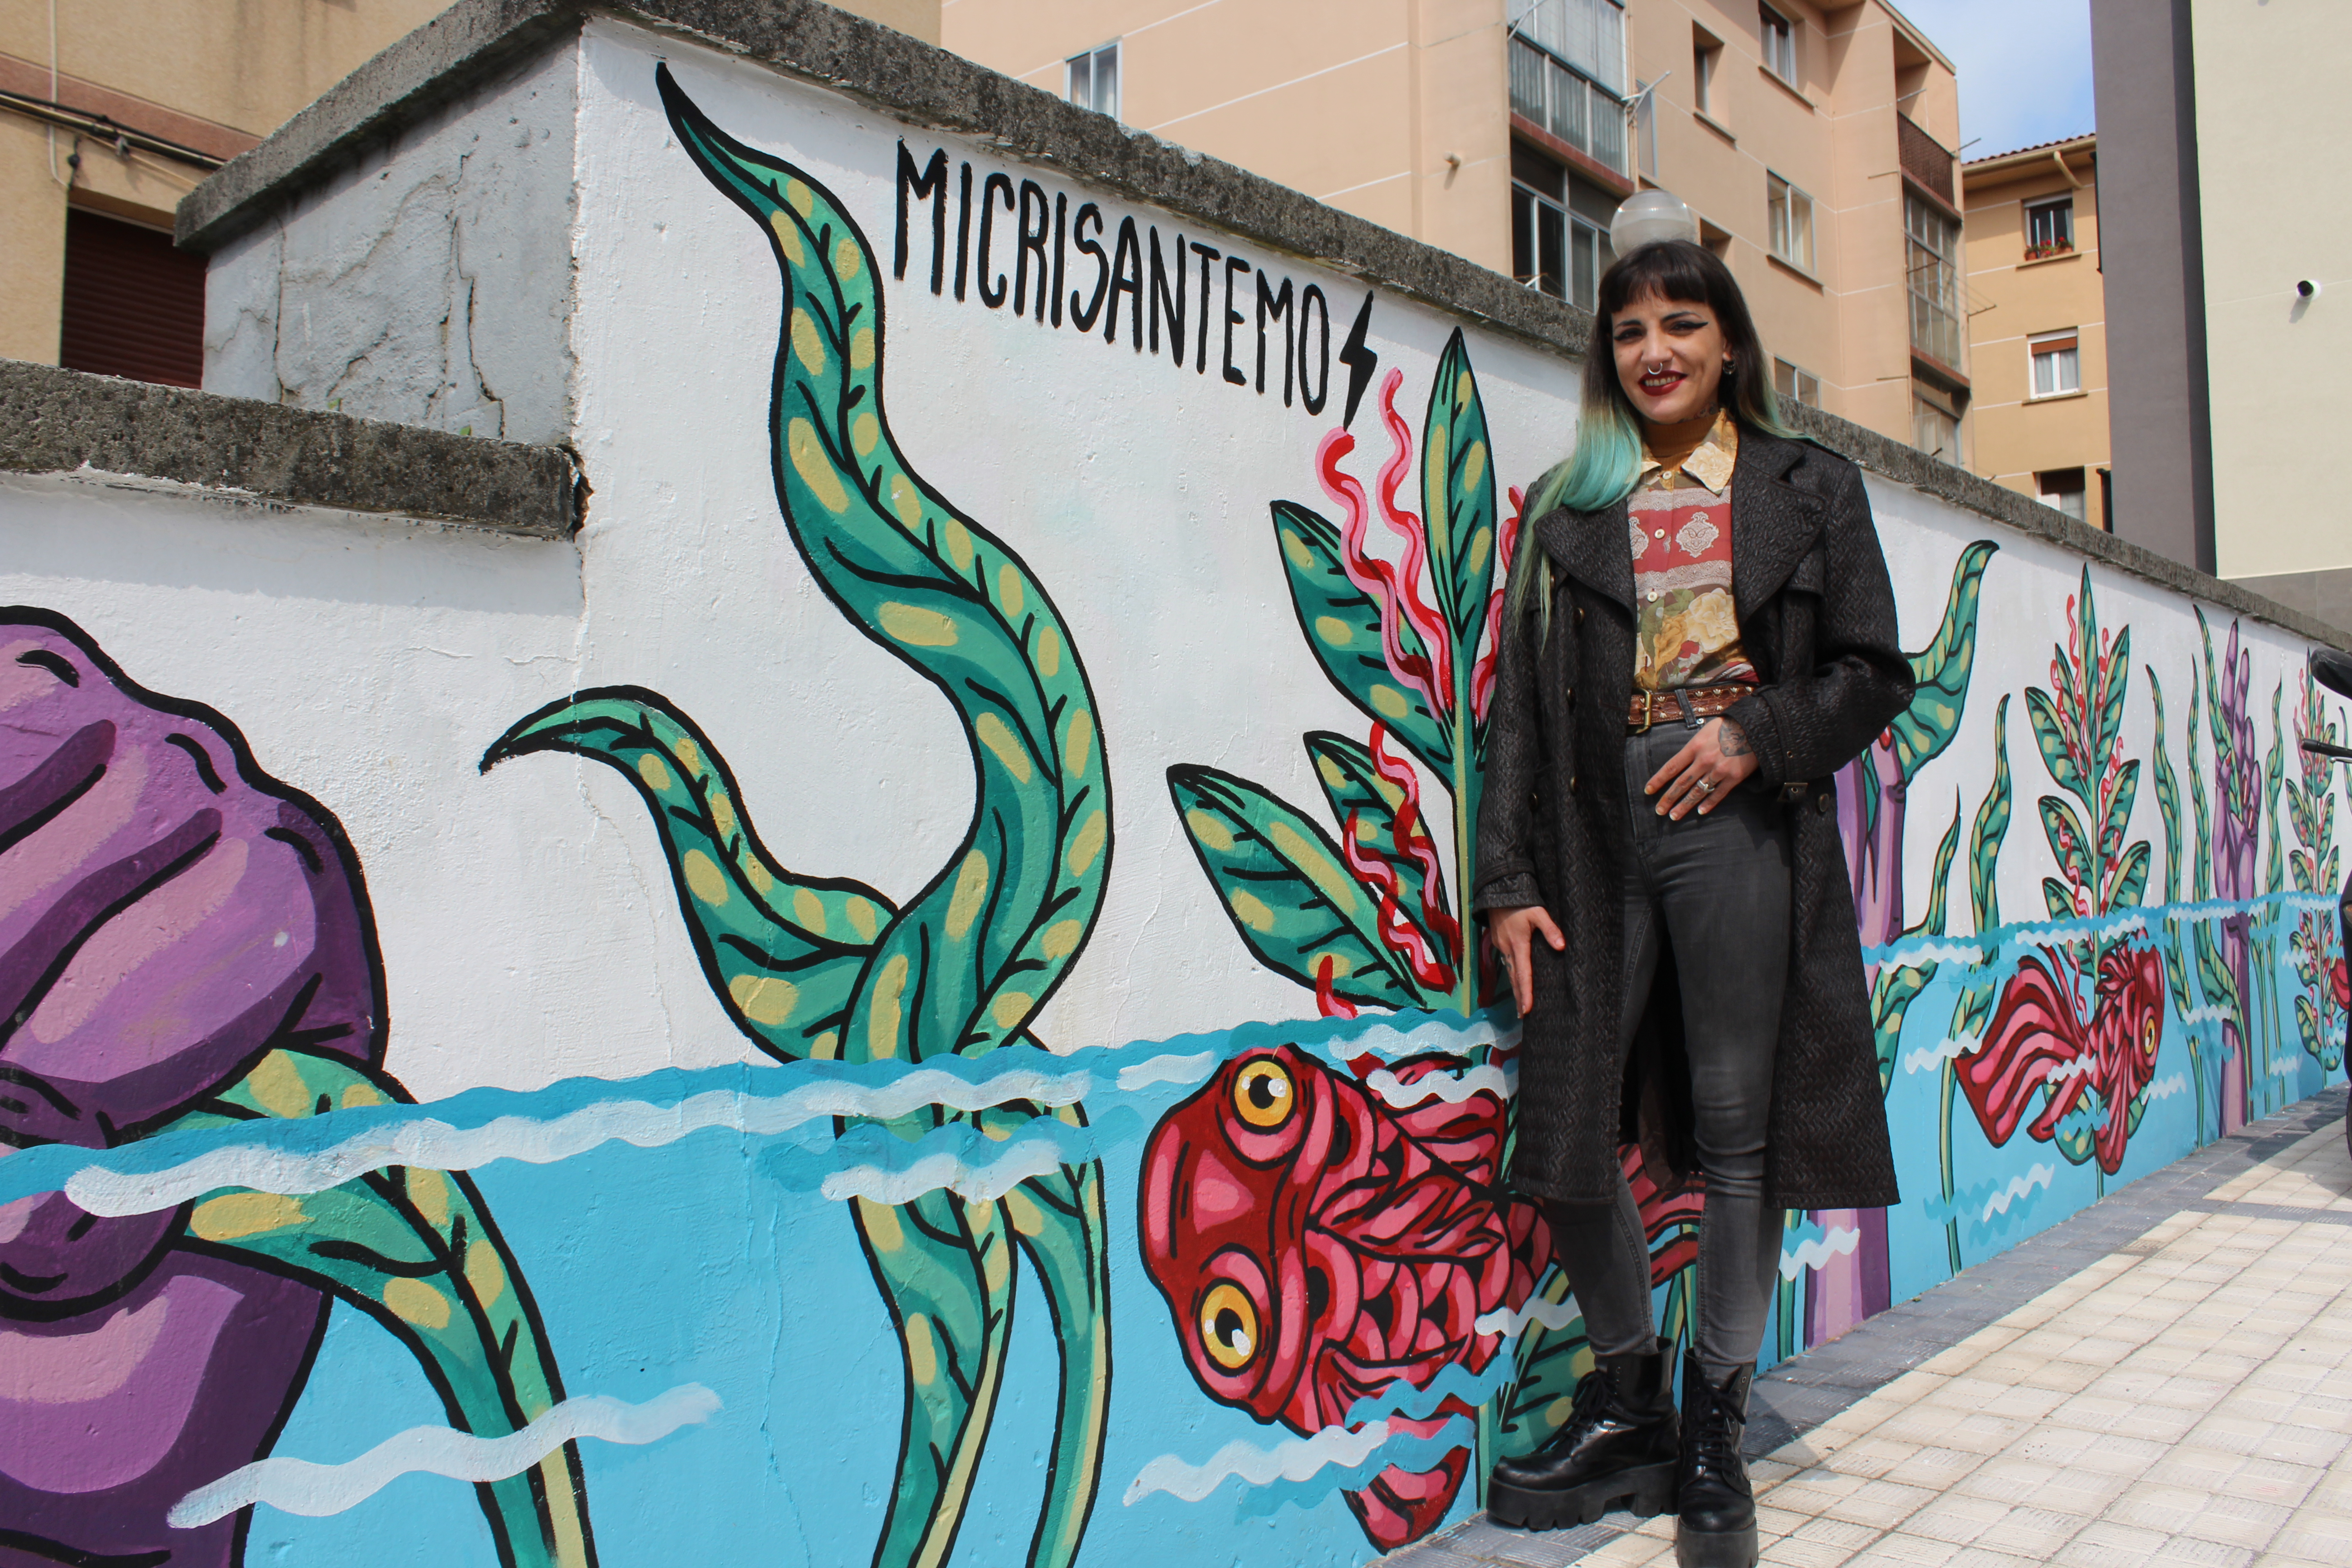 Cristina Juaniz, Micrisantemo artista: “Asko gustatzen zait Irunen muralak egitea, uste baitut kolore asko behar duen hiria dela”